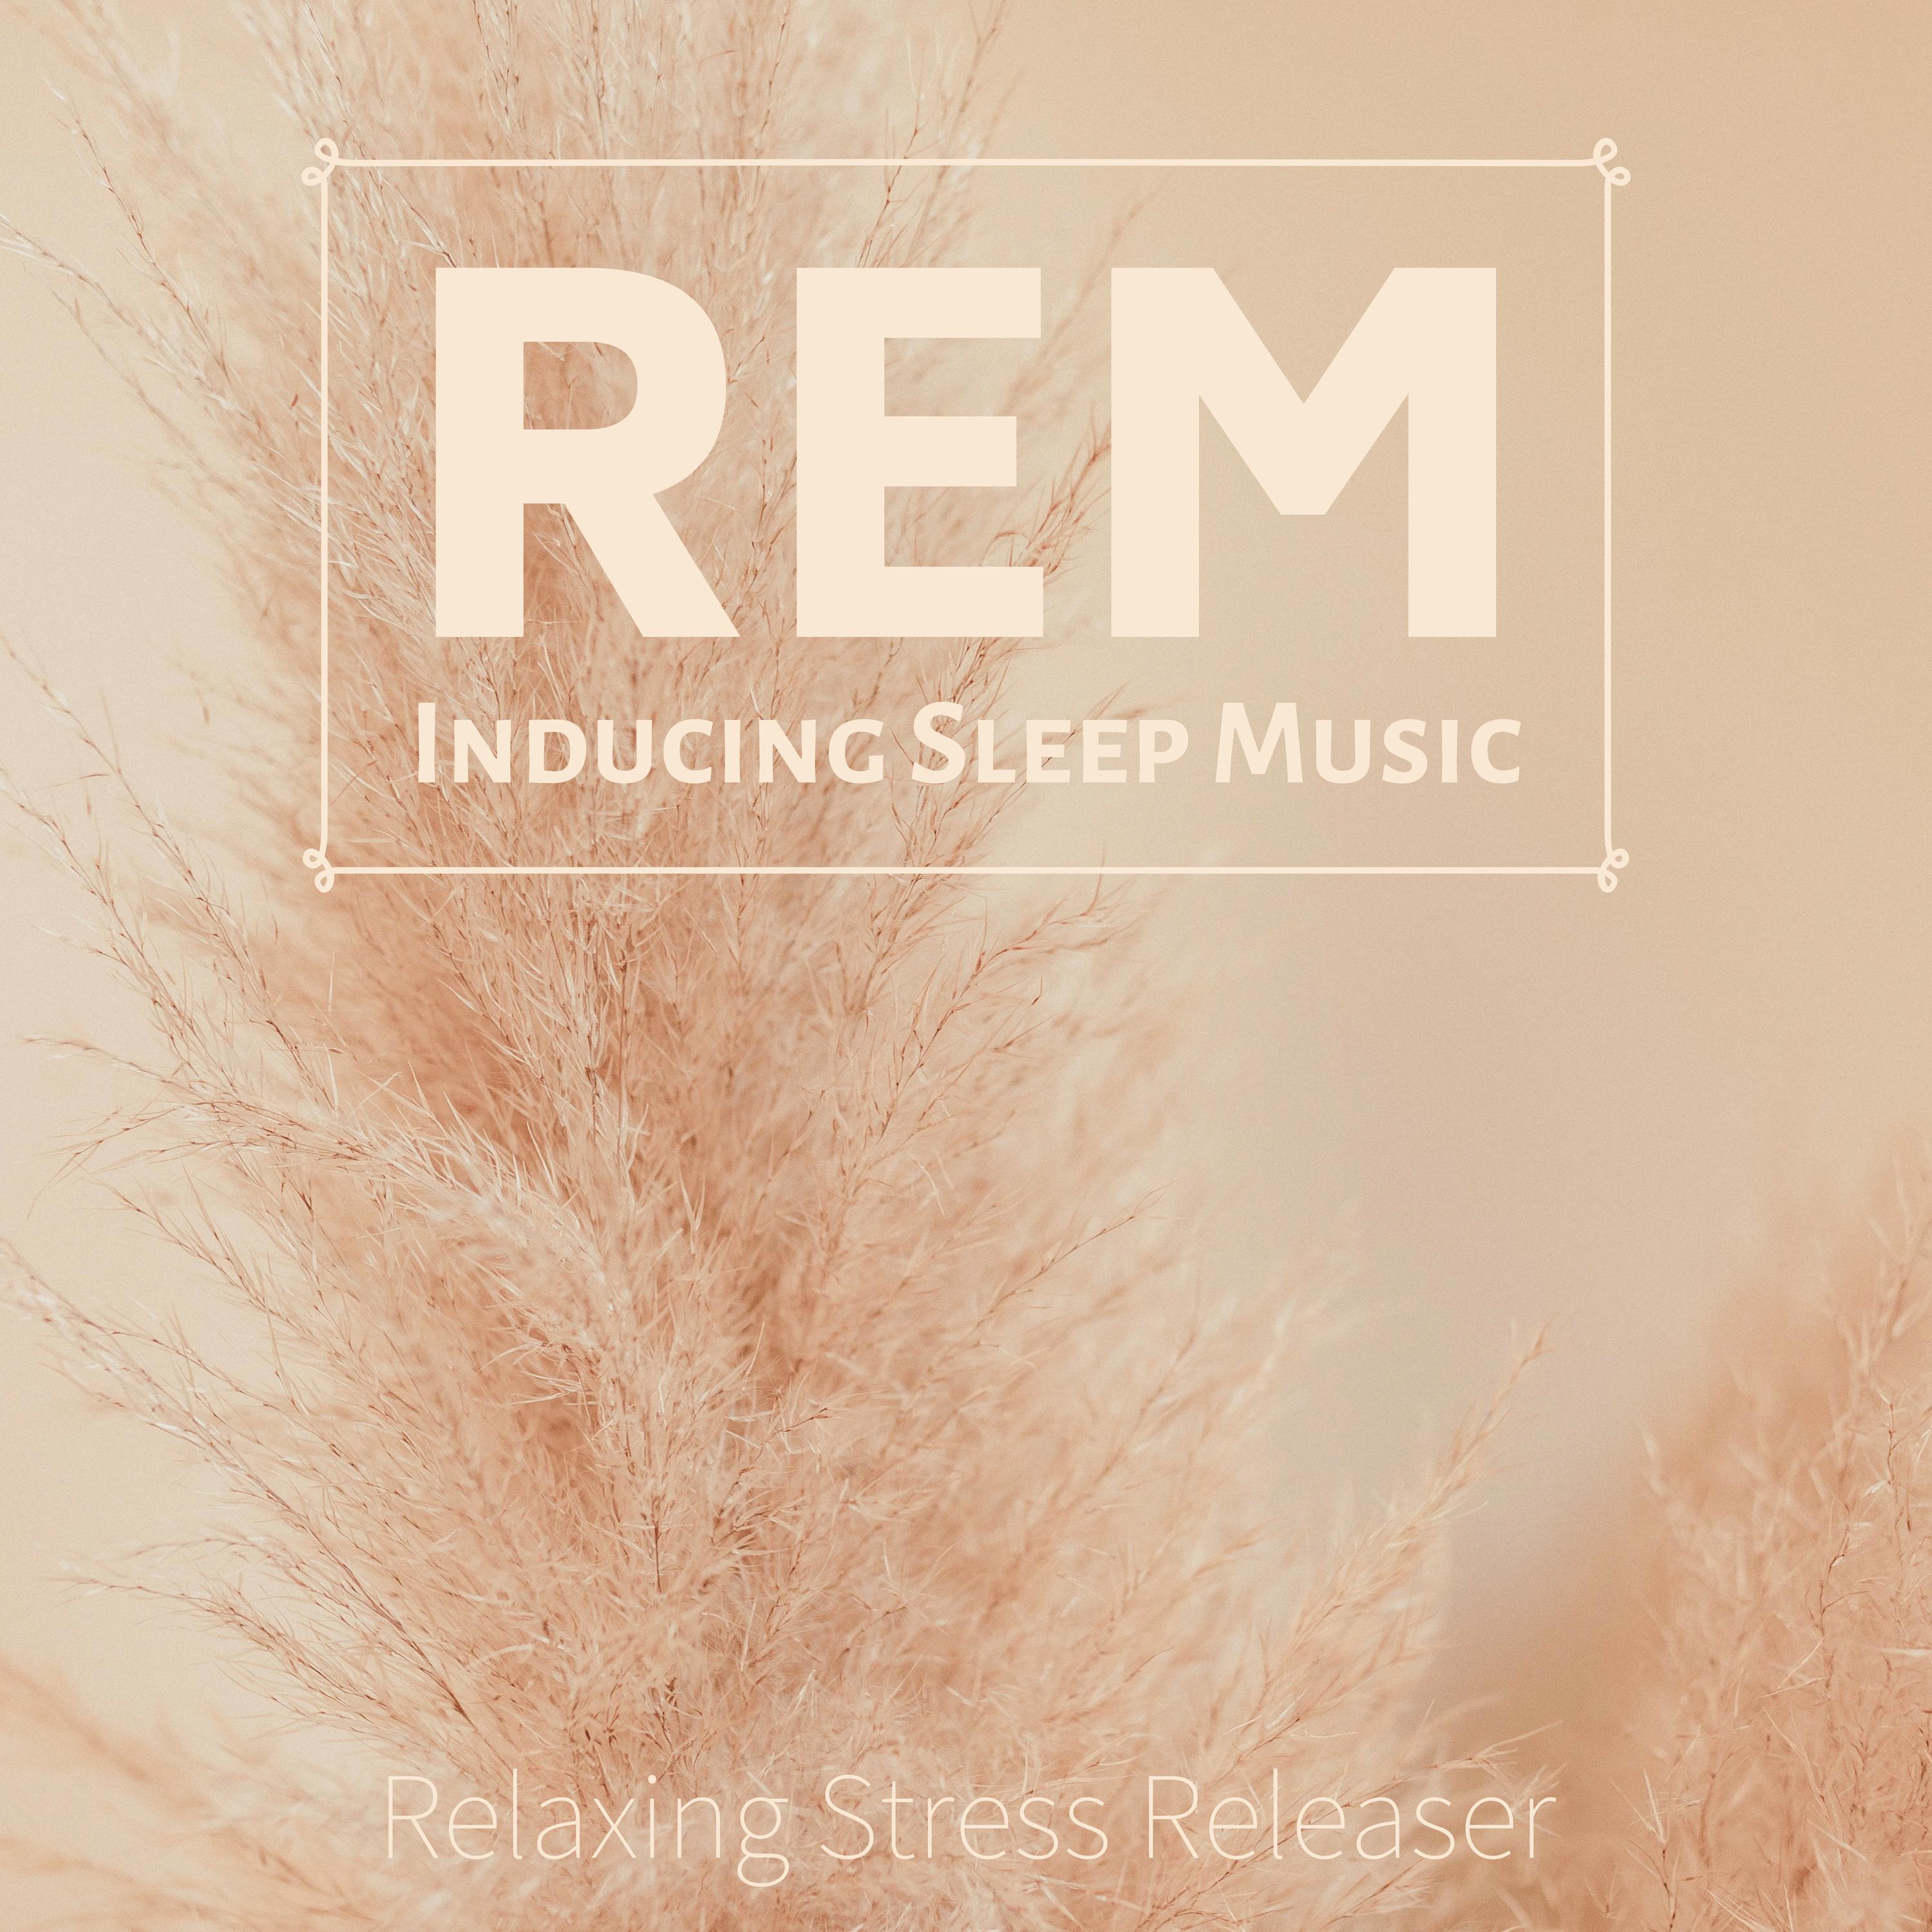 REM Inducing Sleep Music - Relaxing Stress Releaser